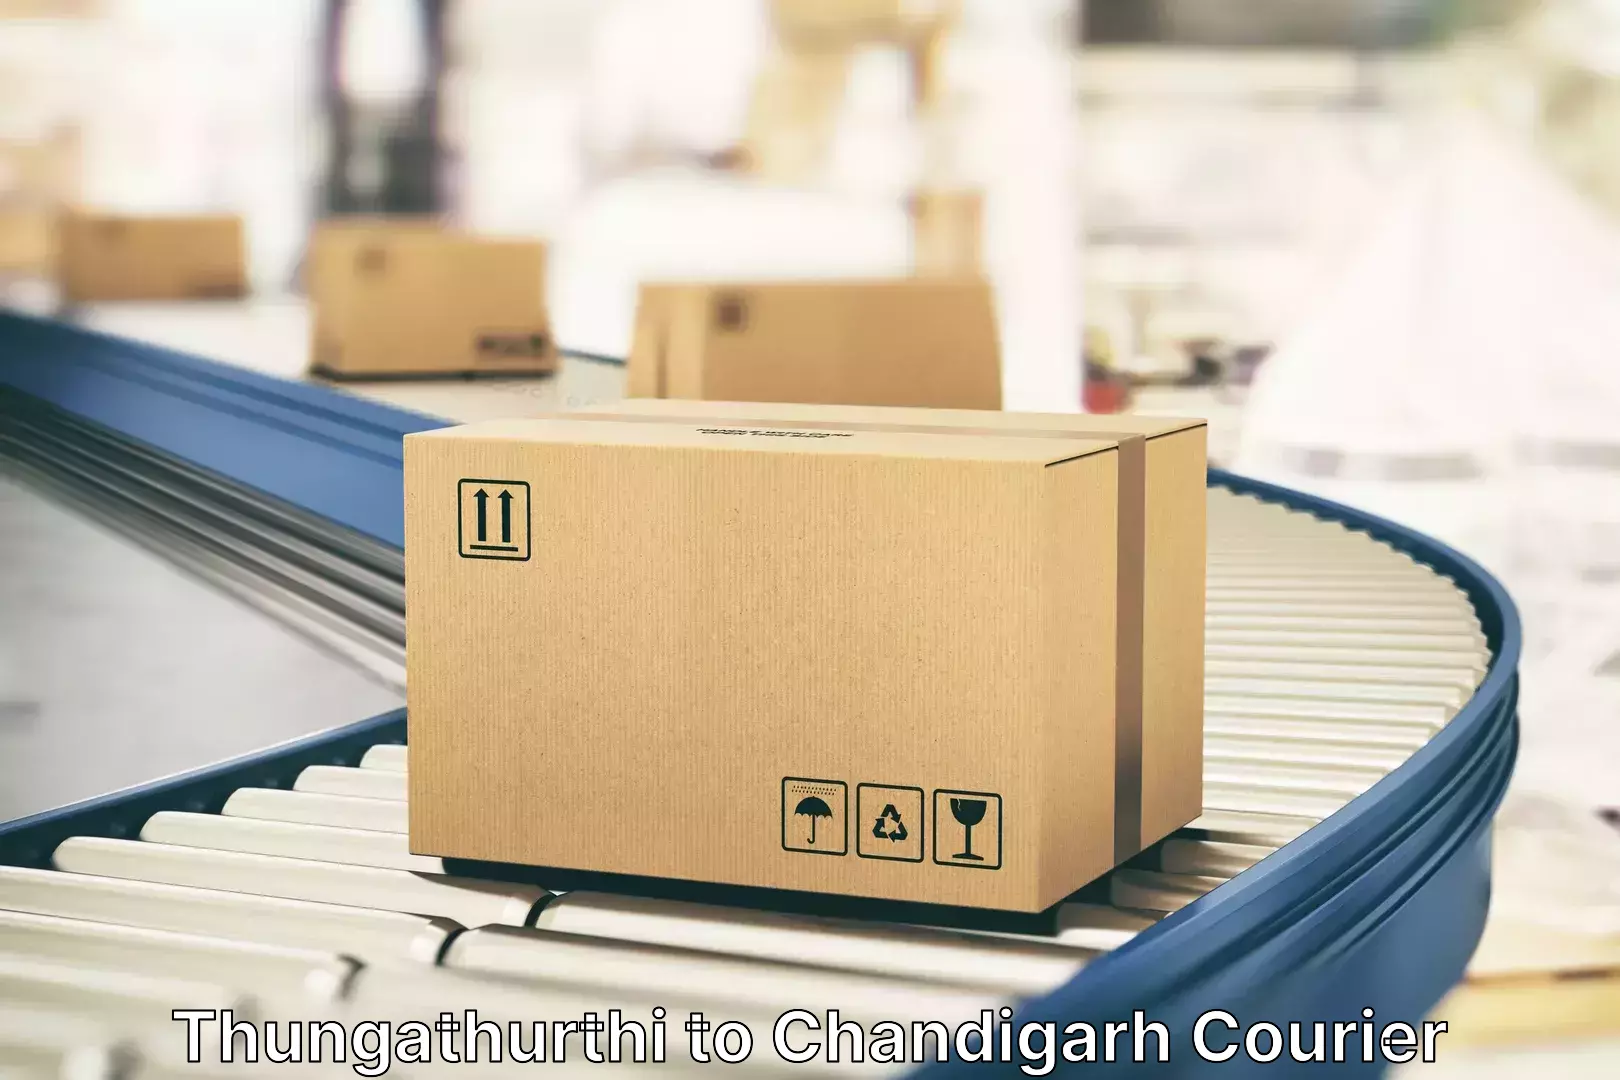 Online luggage shipping Thungathurthi to Chandigarh